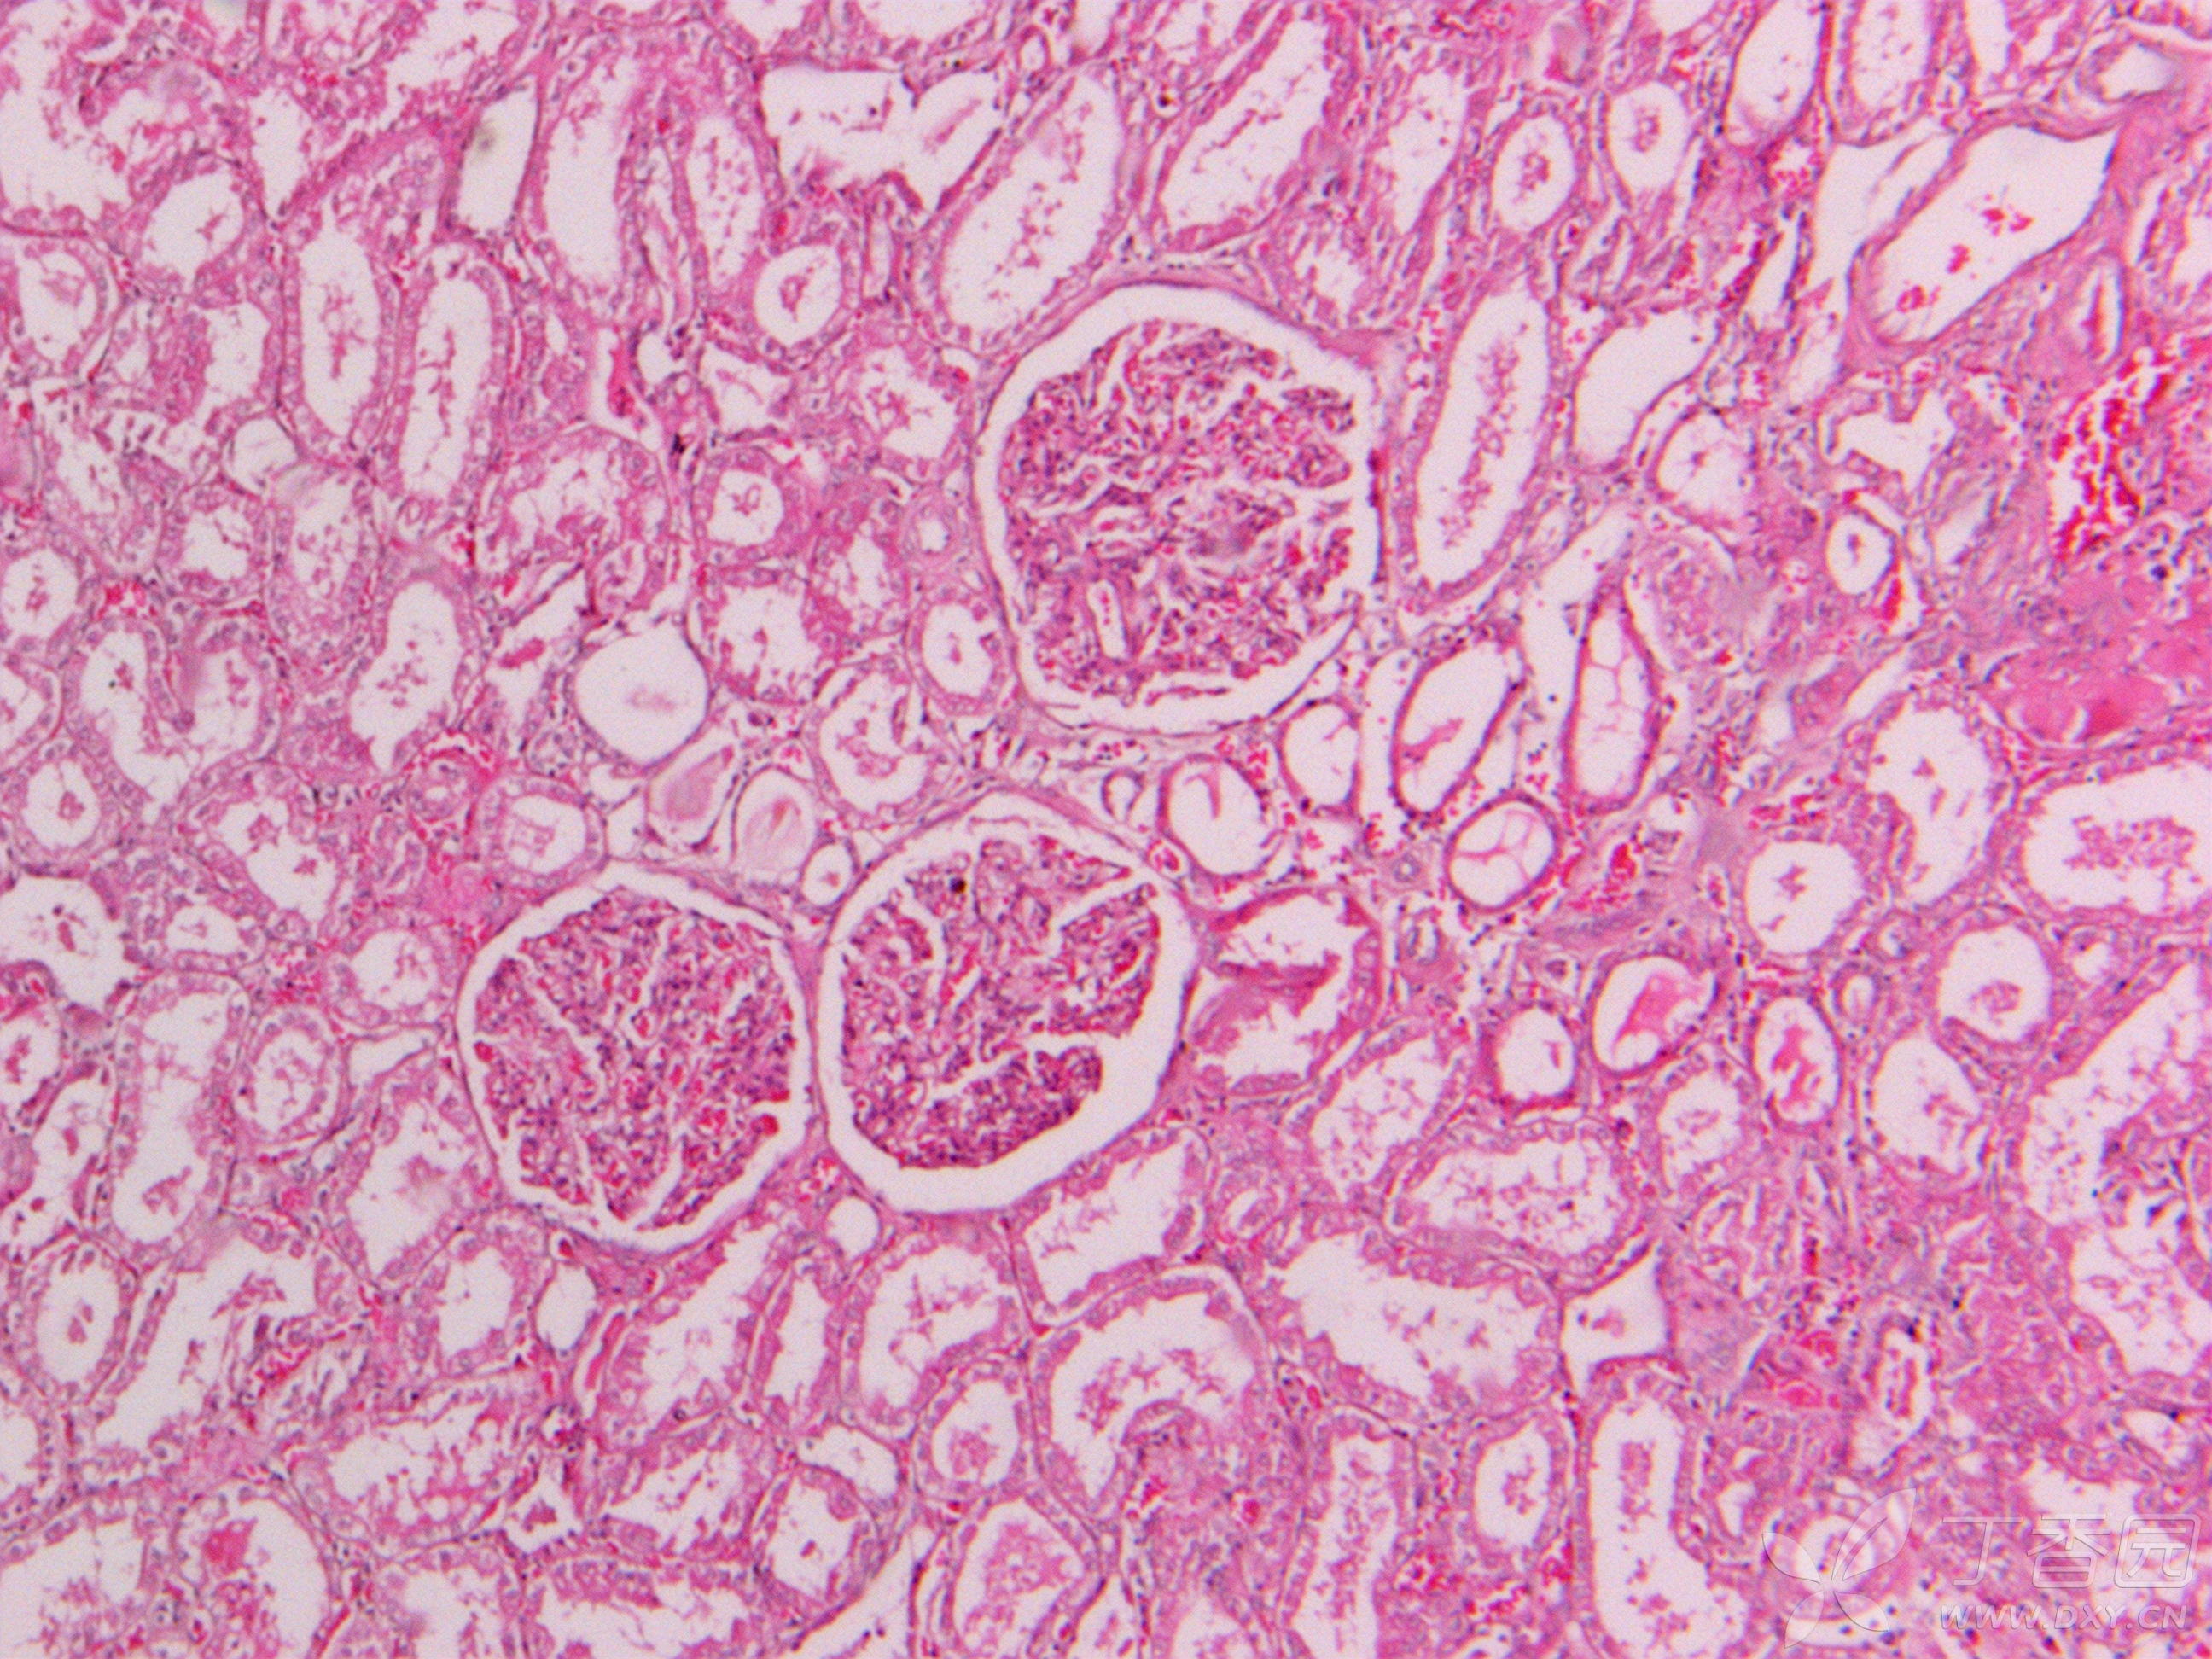 肾小管上皮细胞形态图片